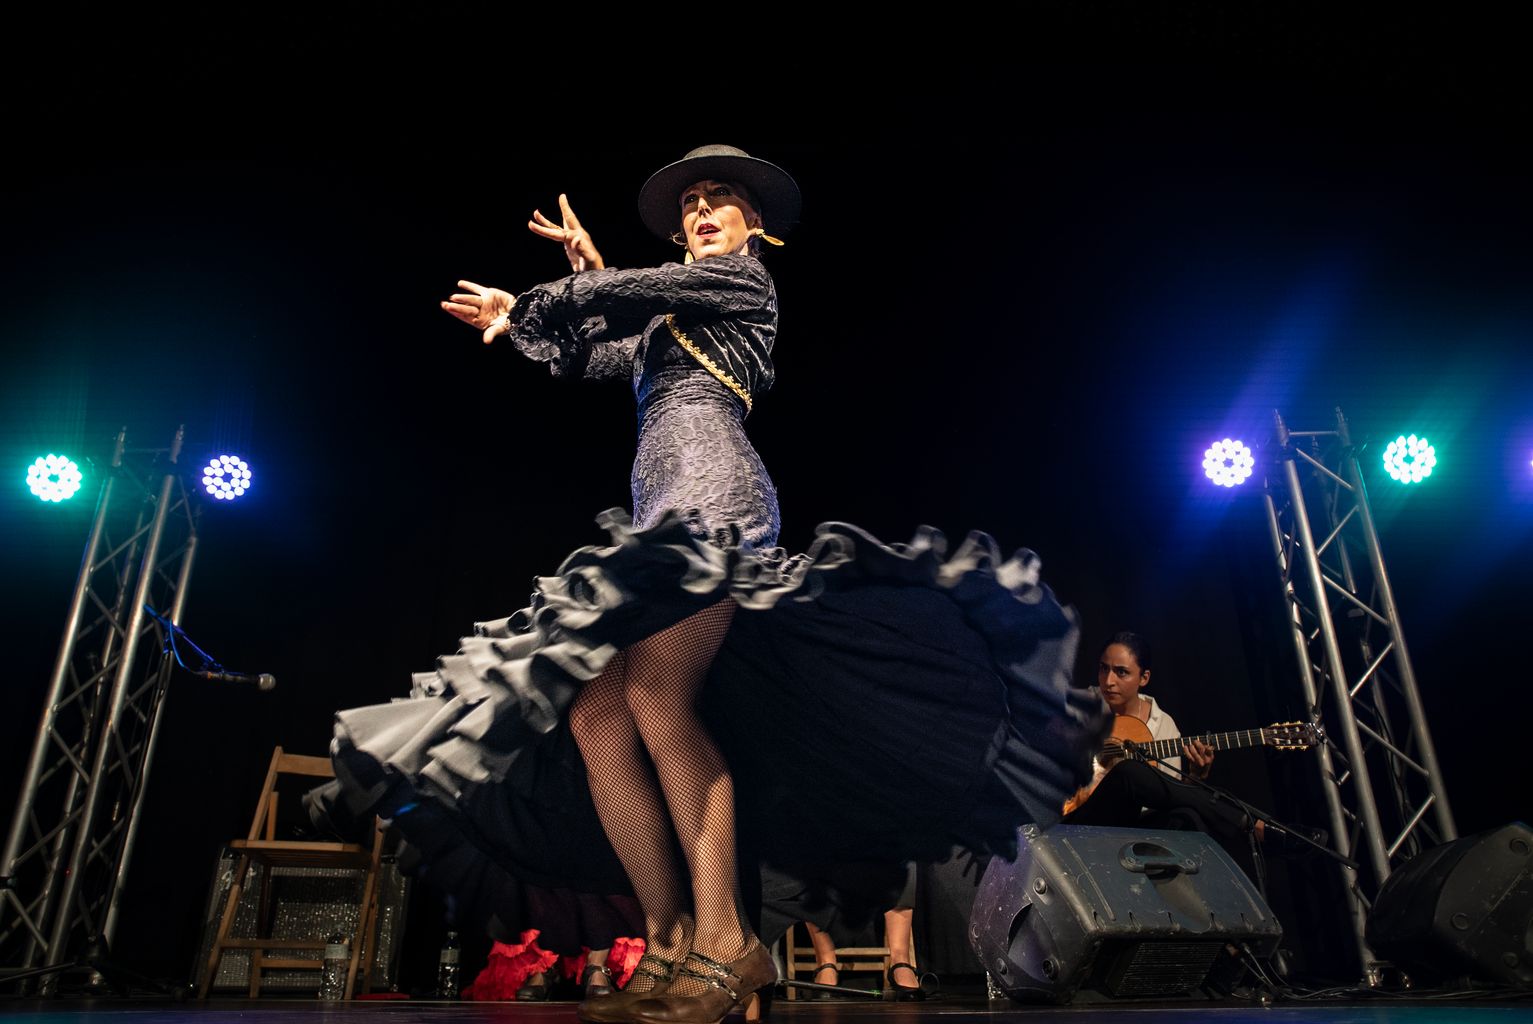 Actuació de Flamenco Metropolitano a la Fabra i Coats promogut per Acció Cultura Viva amb motiu de les festes de la Mercè